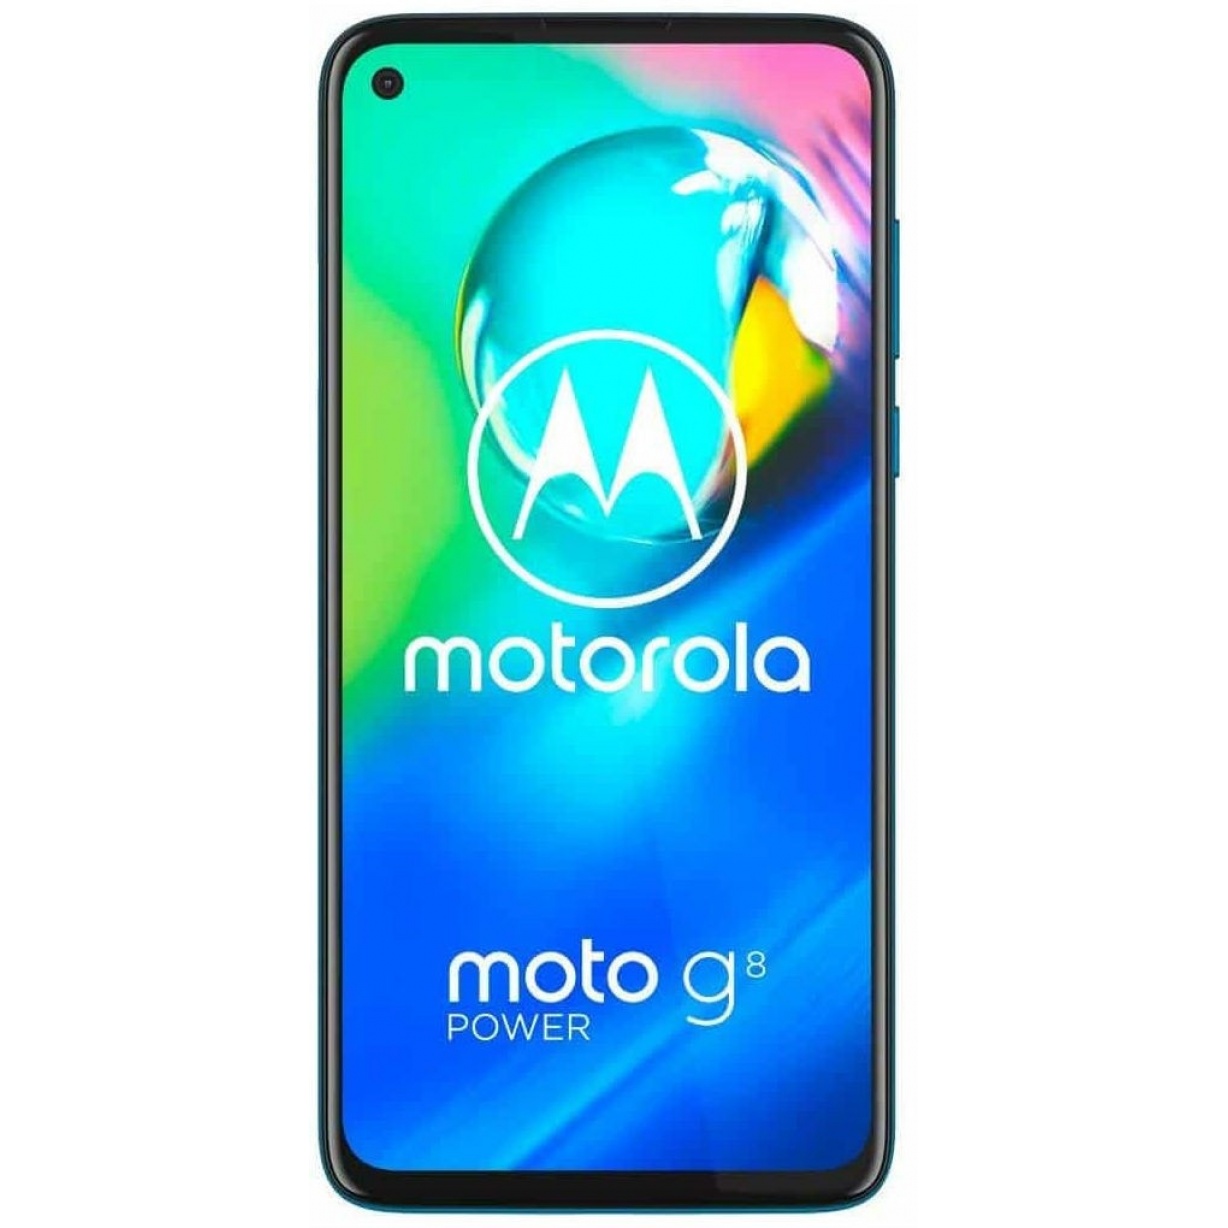 Motorola Moto G8 Power 64GB Dual-SIM Capri Blue